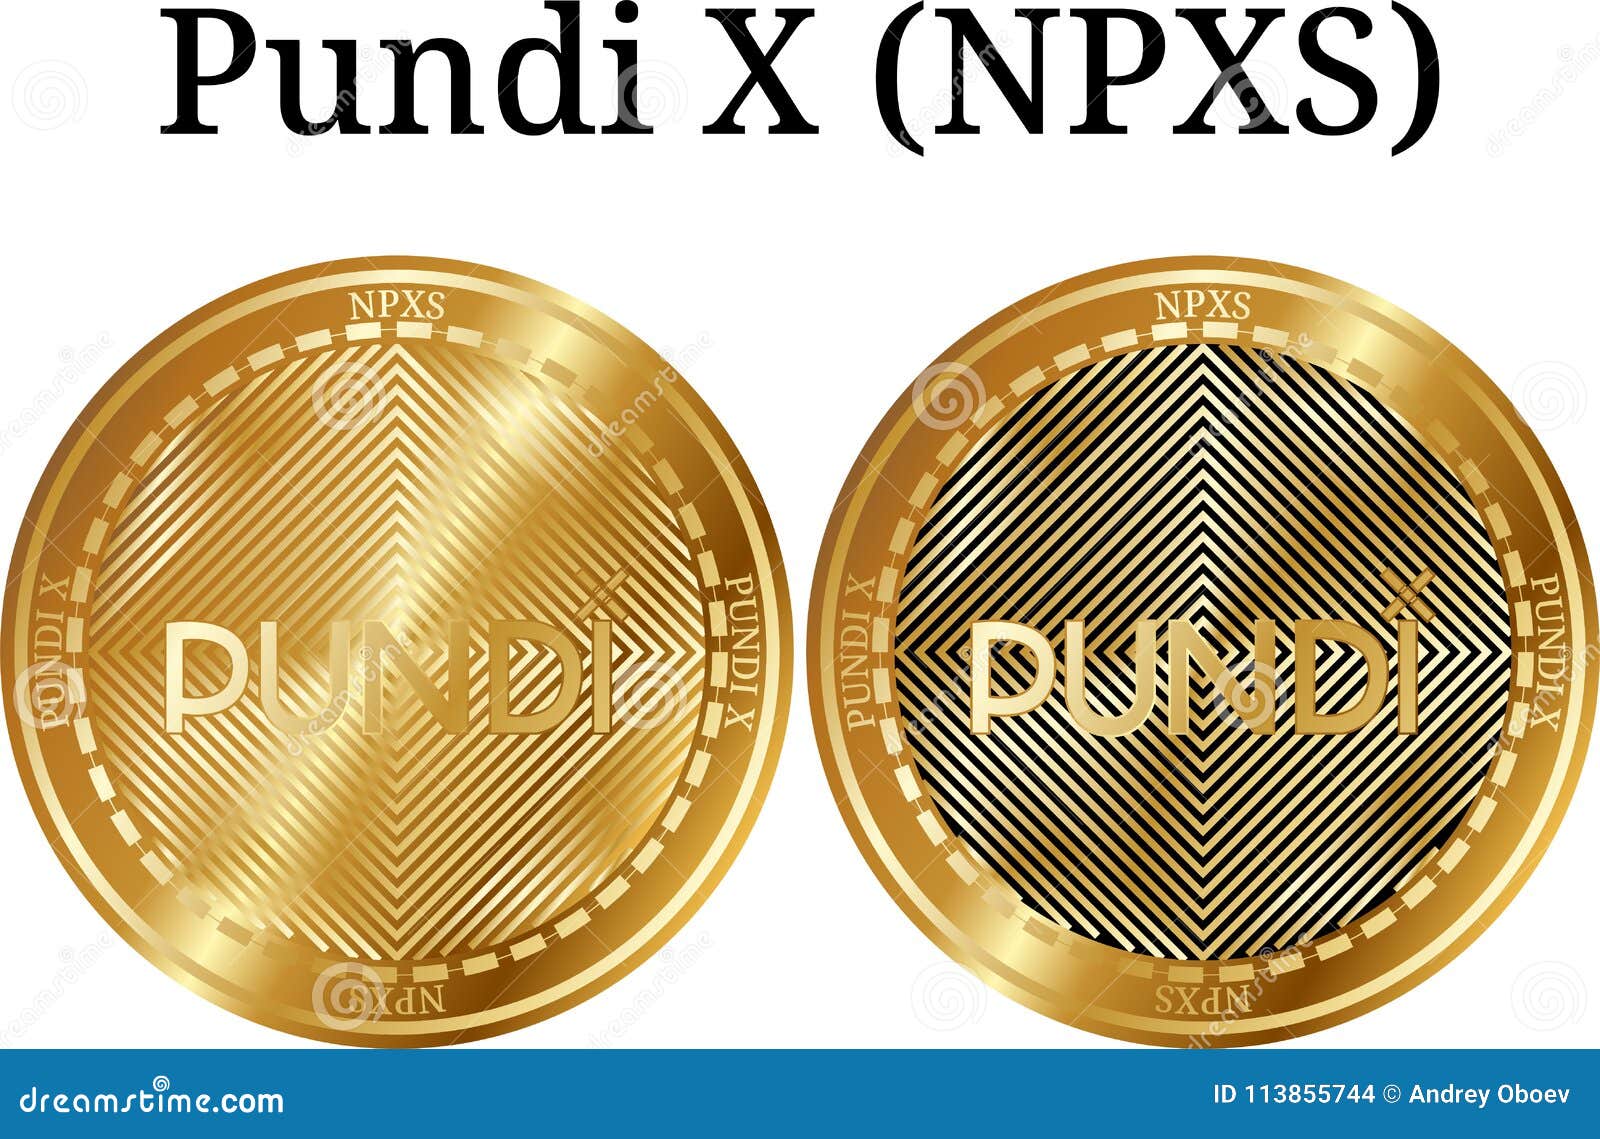 buy npxs coin